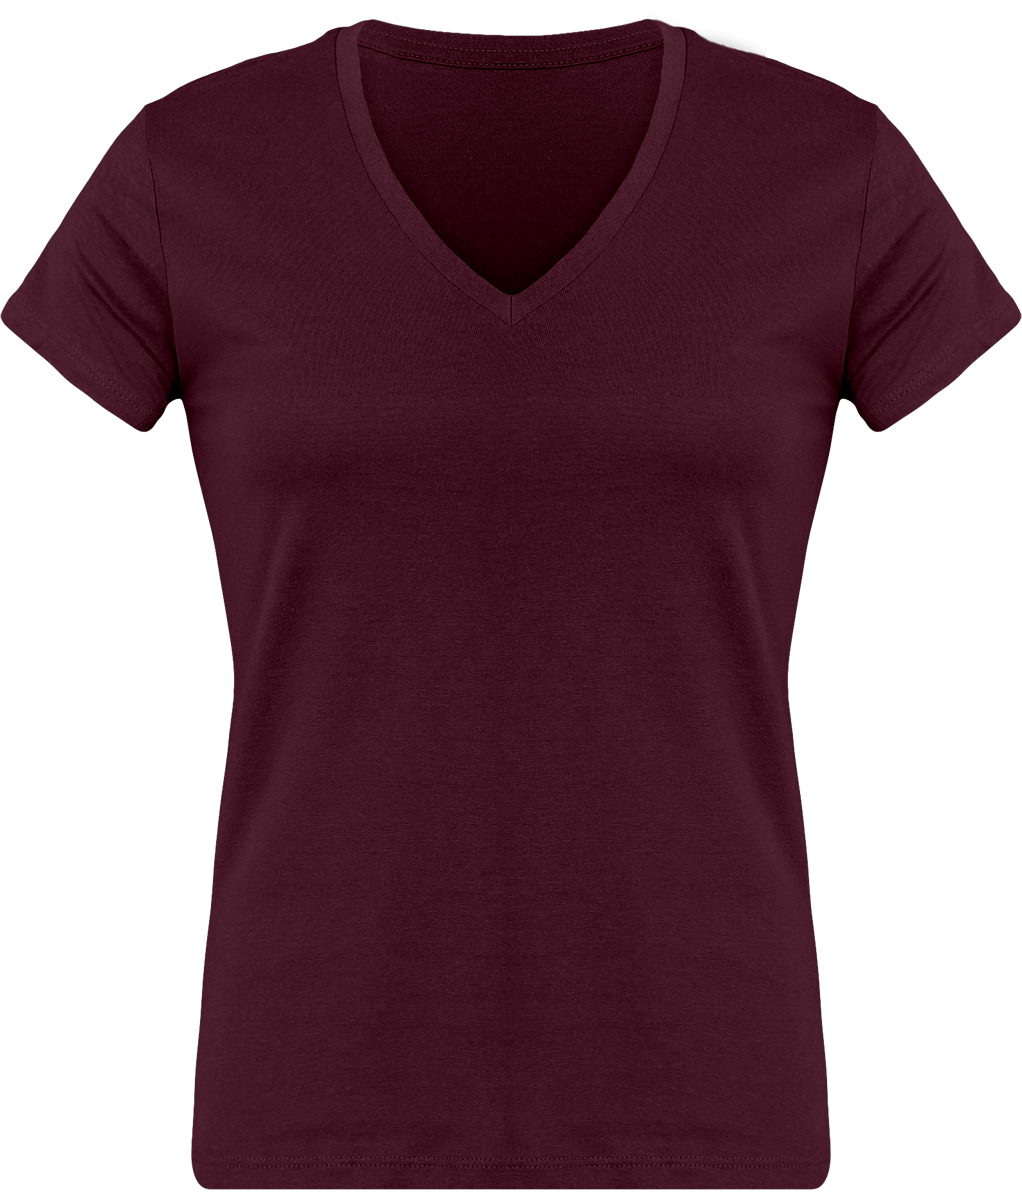 T-Shirt Femme Personnalisé, Féminin Et Confortable Avec Son Col En V Wine